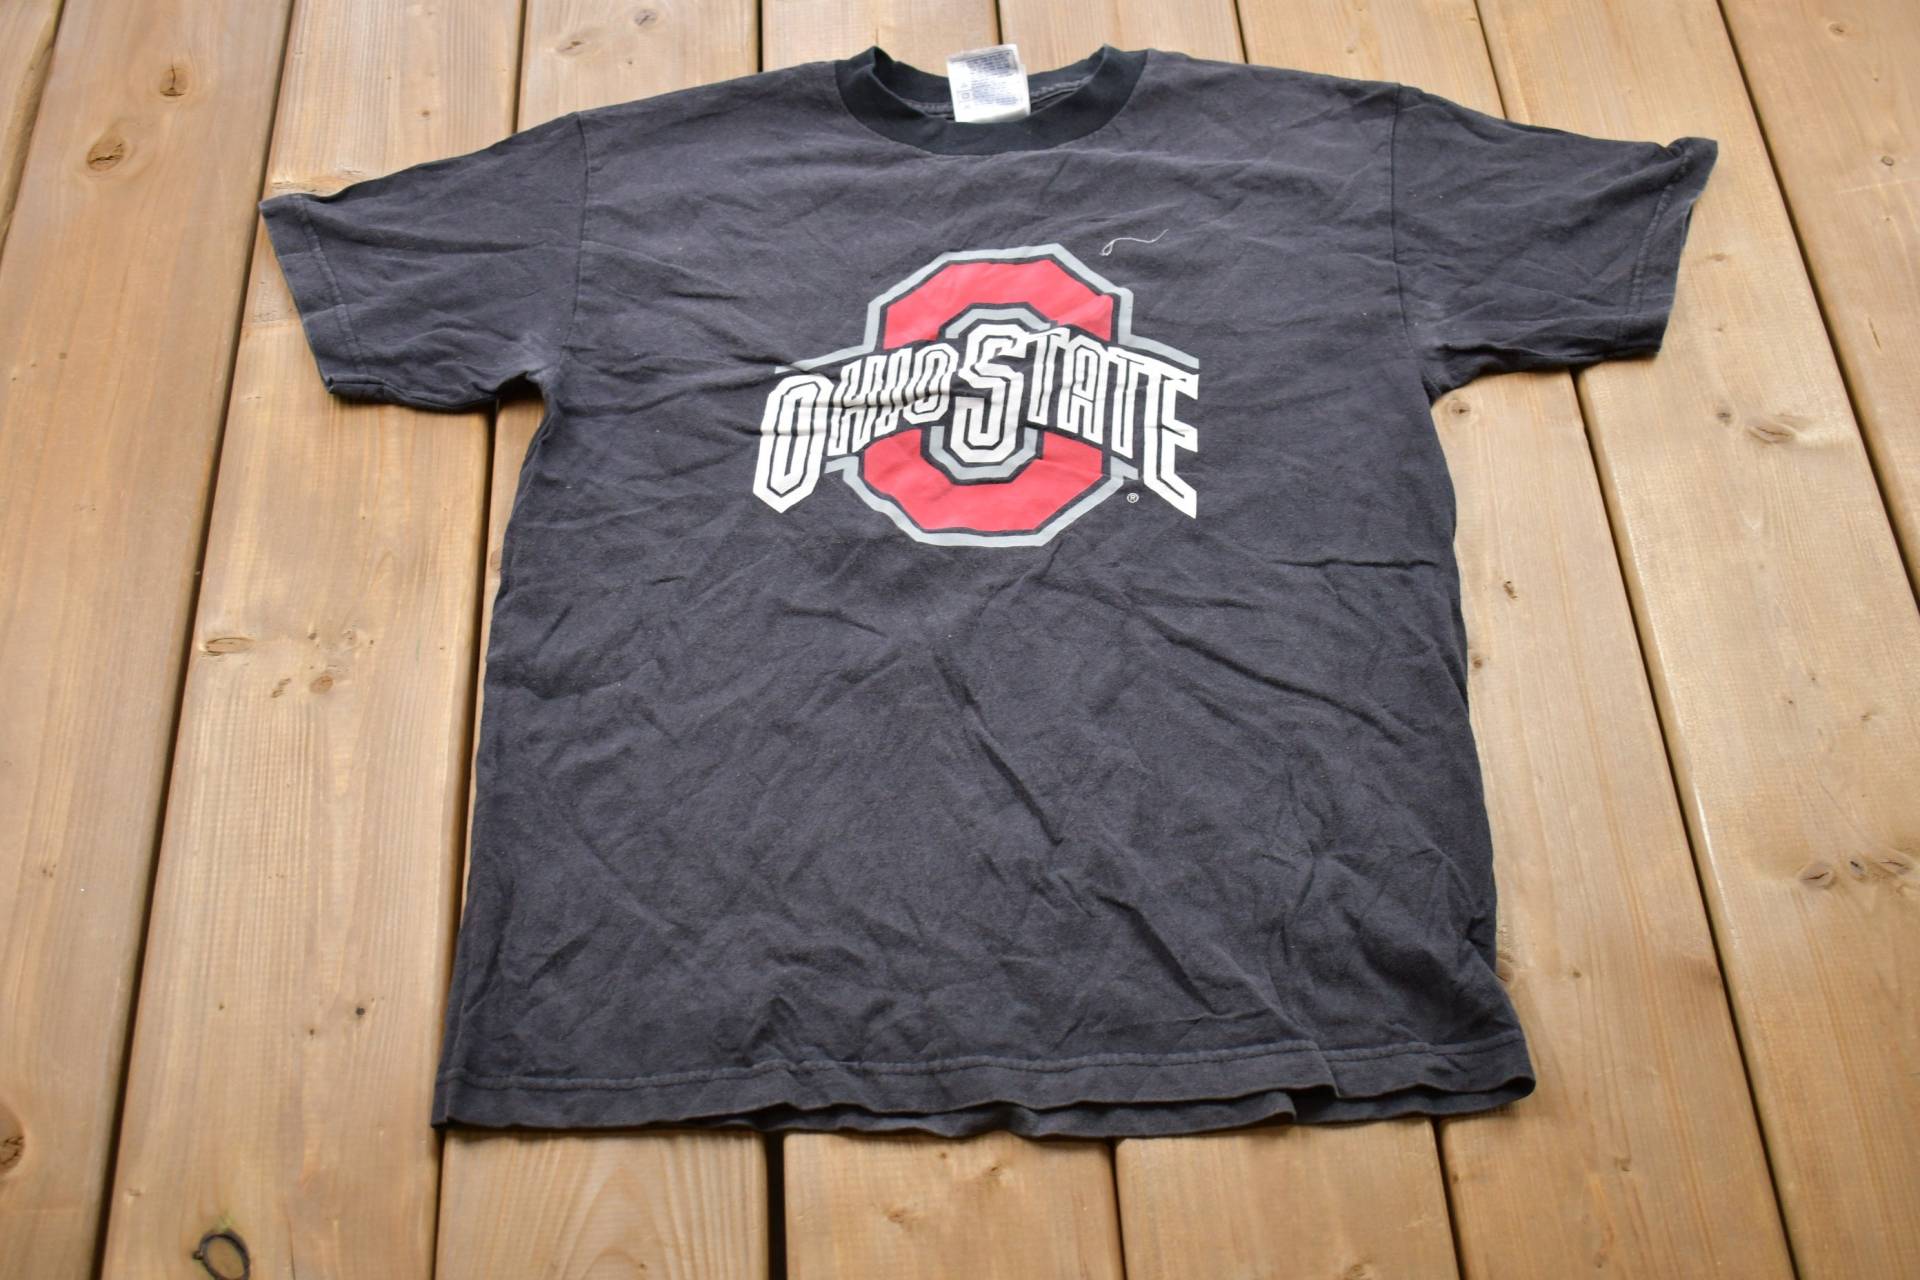 1990S College T-Shirt Der Universität Von Ohio State Buckeyes/1990Er Jahre Americana Sportkleidung Athleisure von Lostboysvintage